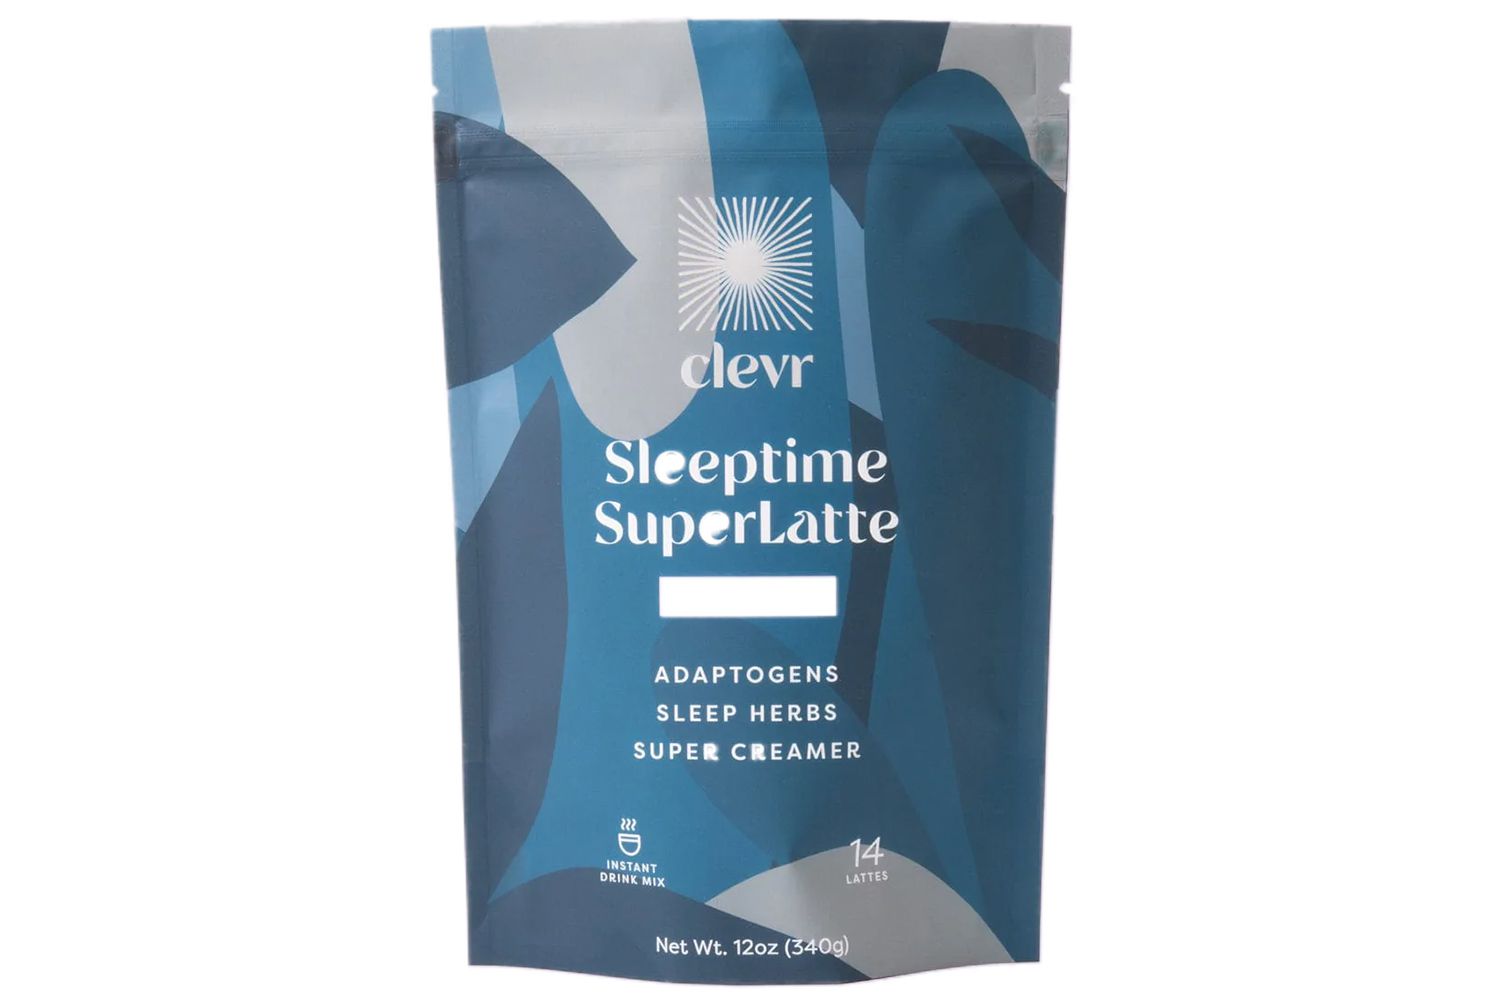 Clevr SleepTime Superlatte